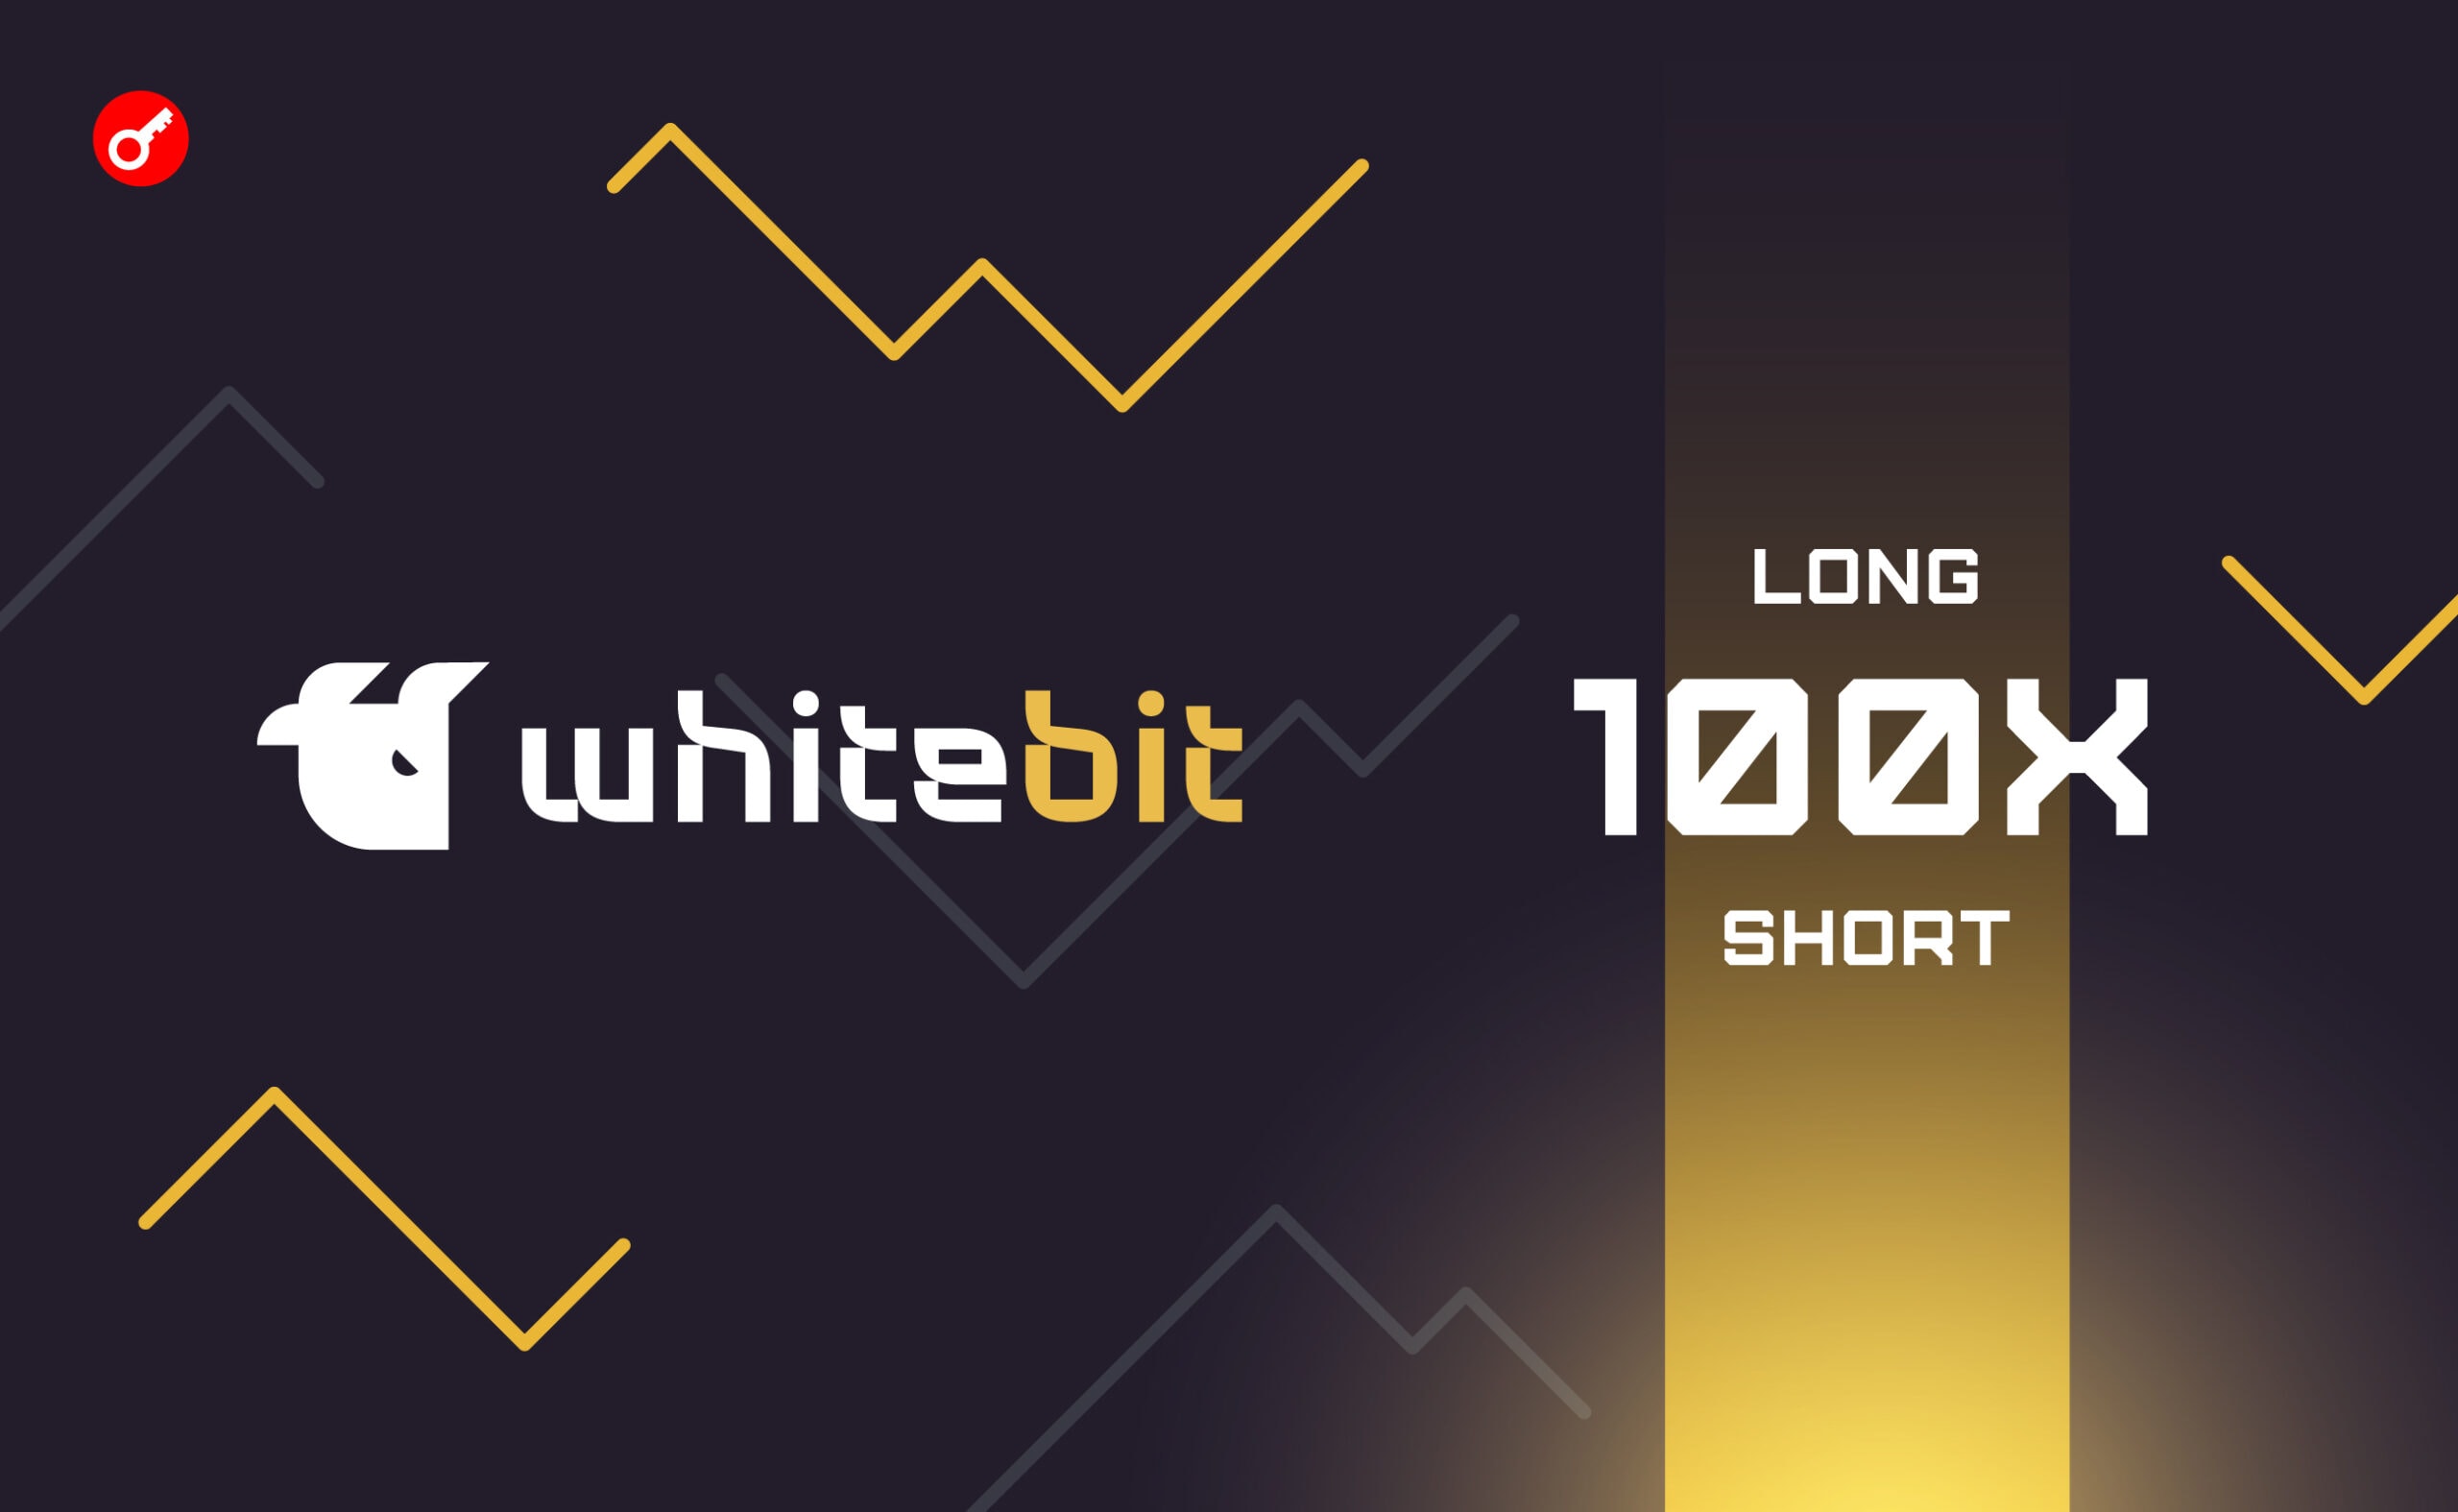 WhiteBIT увеличила максимальное кредитное плечо для фьючерсной торговли до 100х. Заглавный коллаж новости.